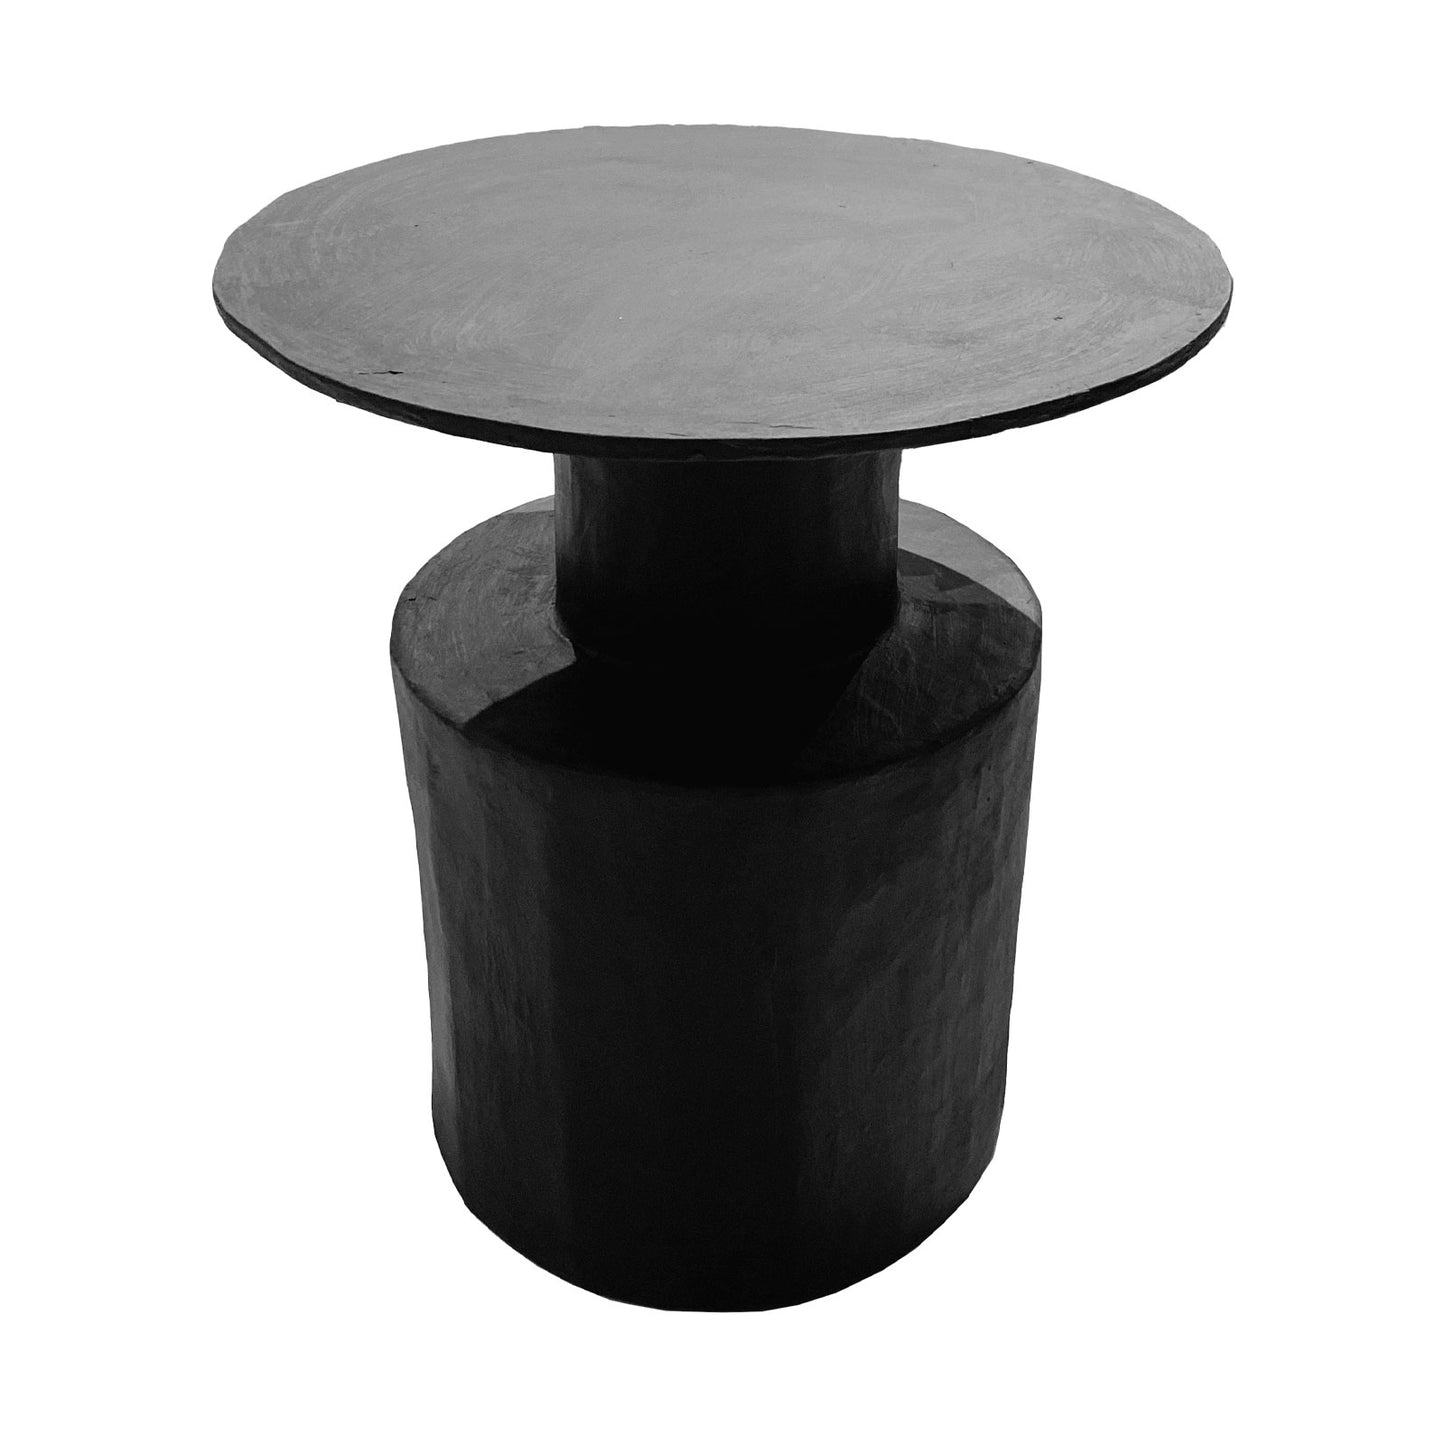 Top Hat Papier-mâché Side Table in Black